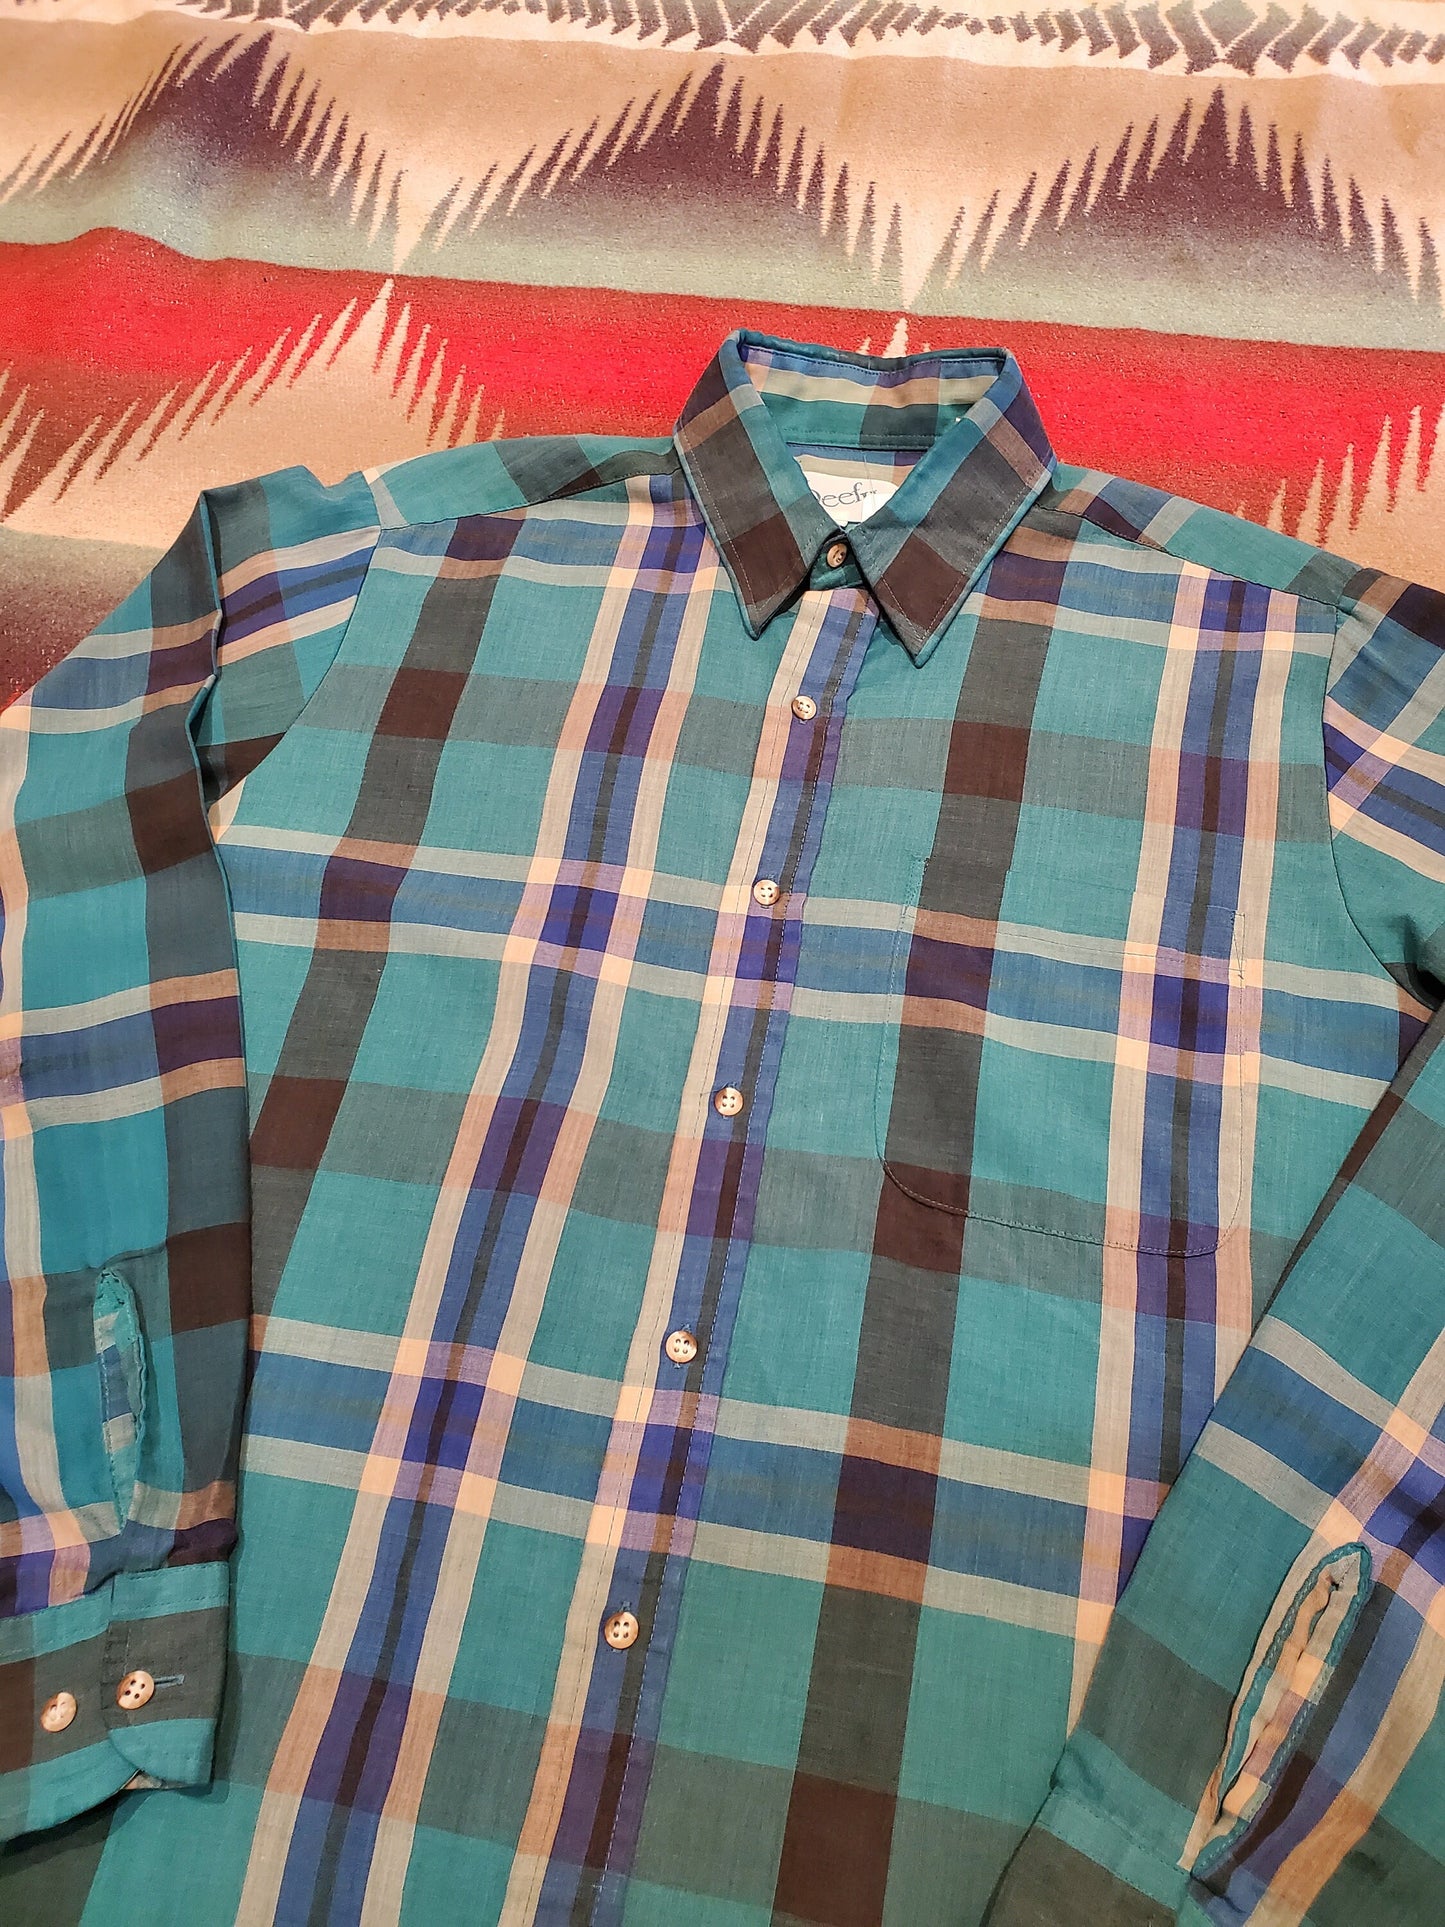 1980s Reef II Lightweight Plaid Button Up Shirt Size M/L